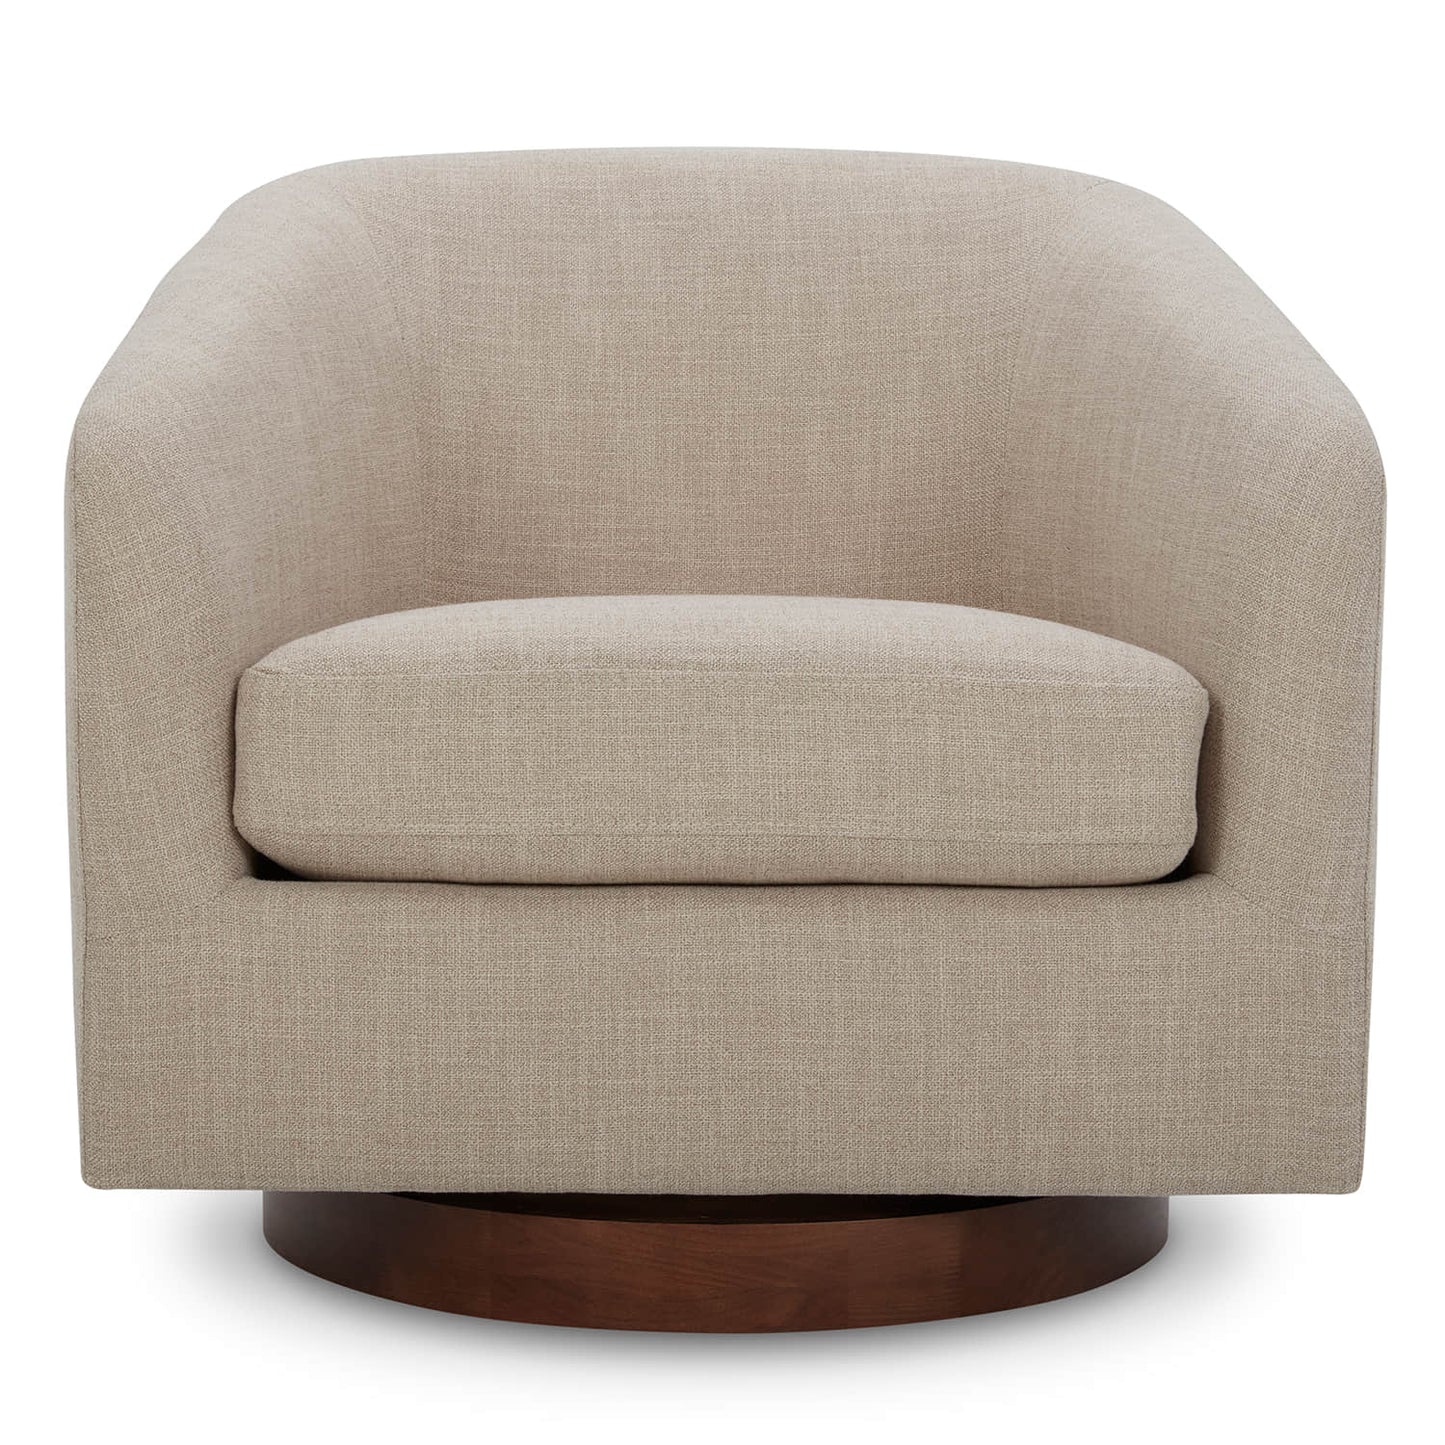 CHITA LIVING-Wren Modern Swivel Accent Chair-Accent Chair-Fabric-Light Gray-